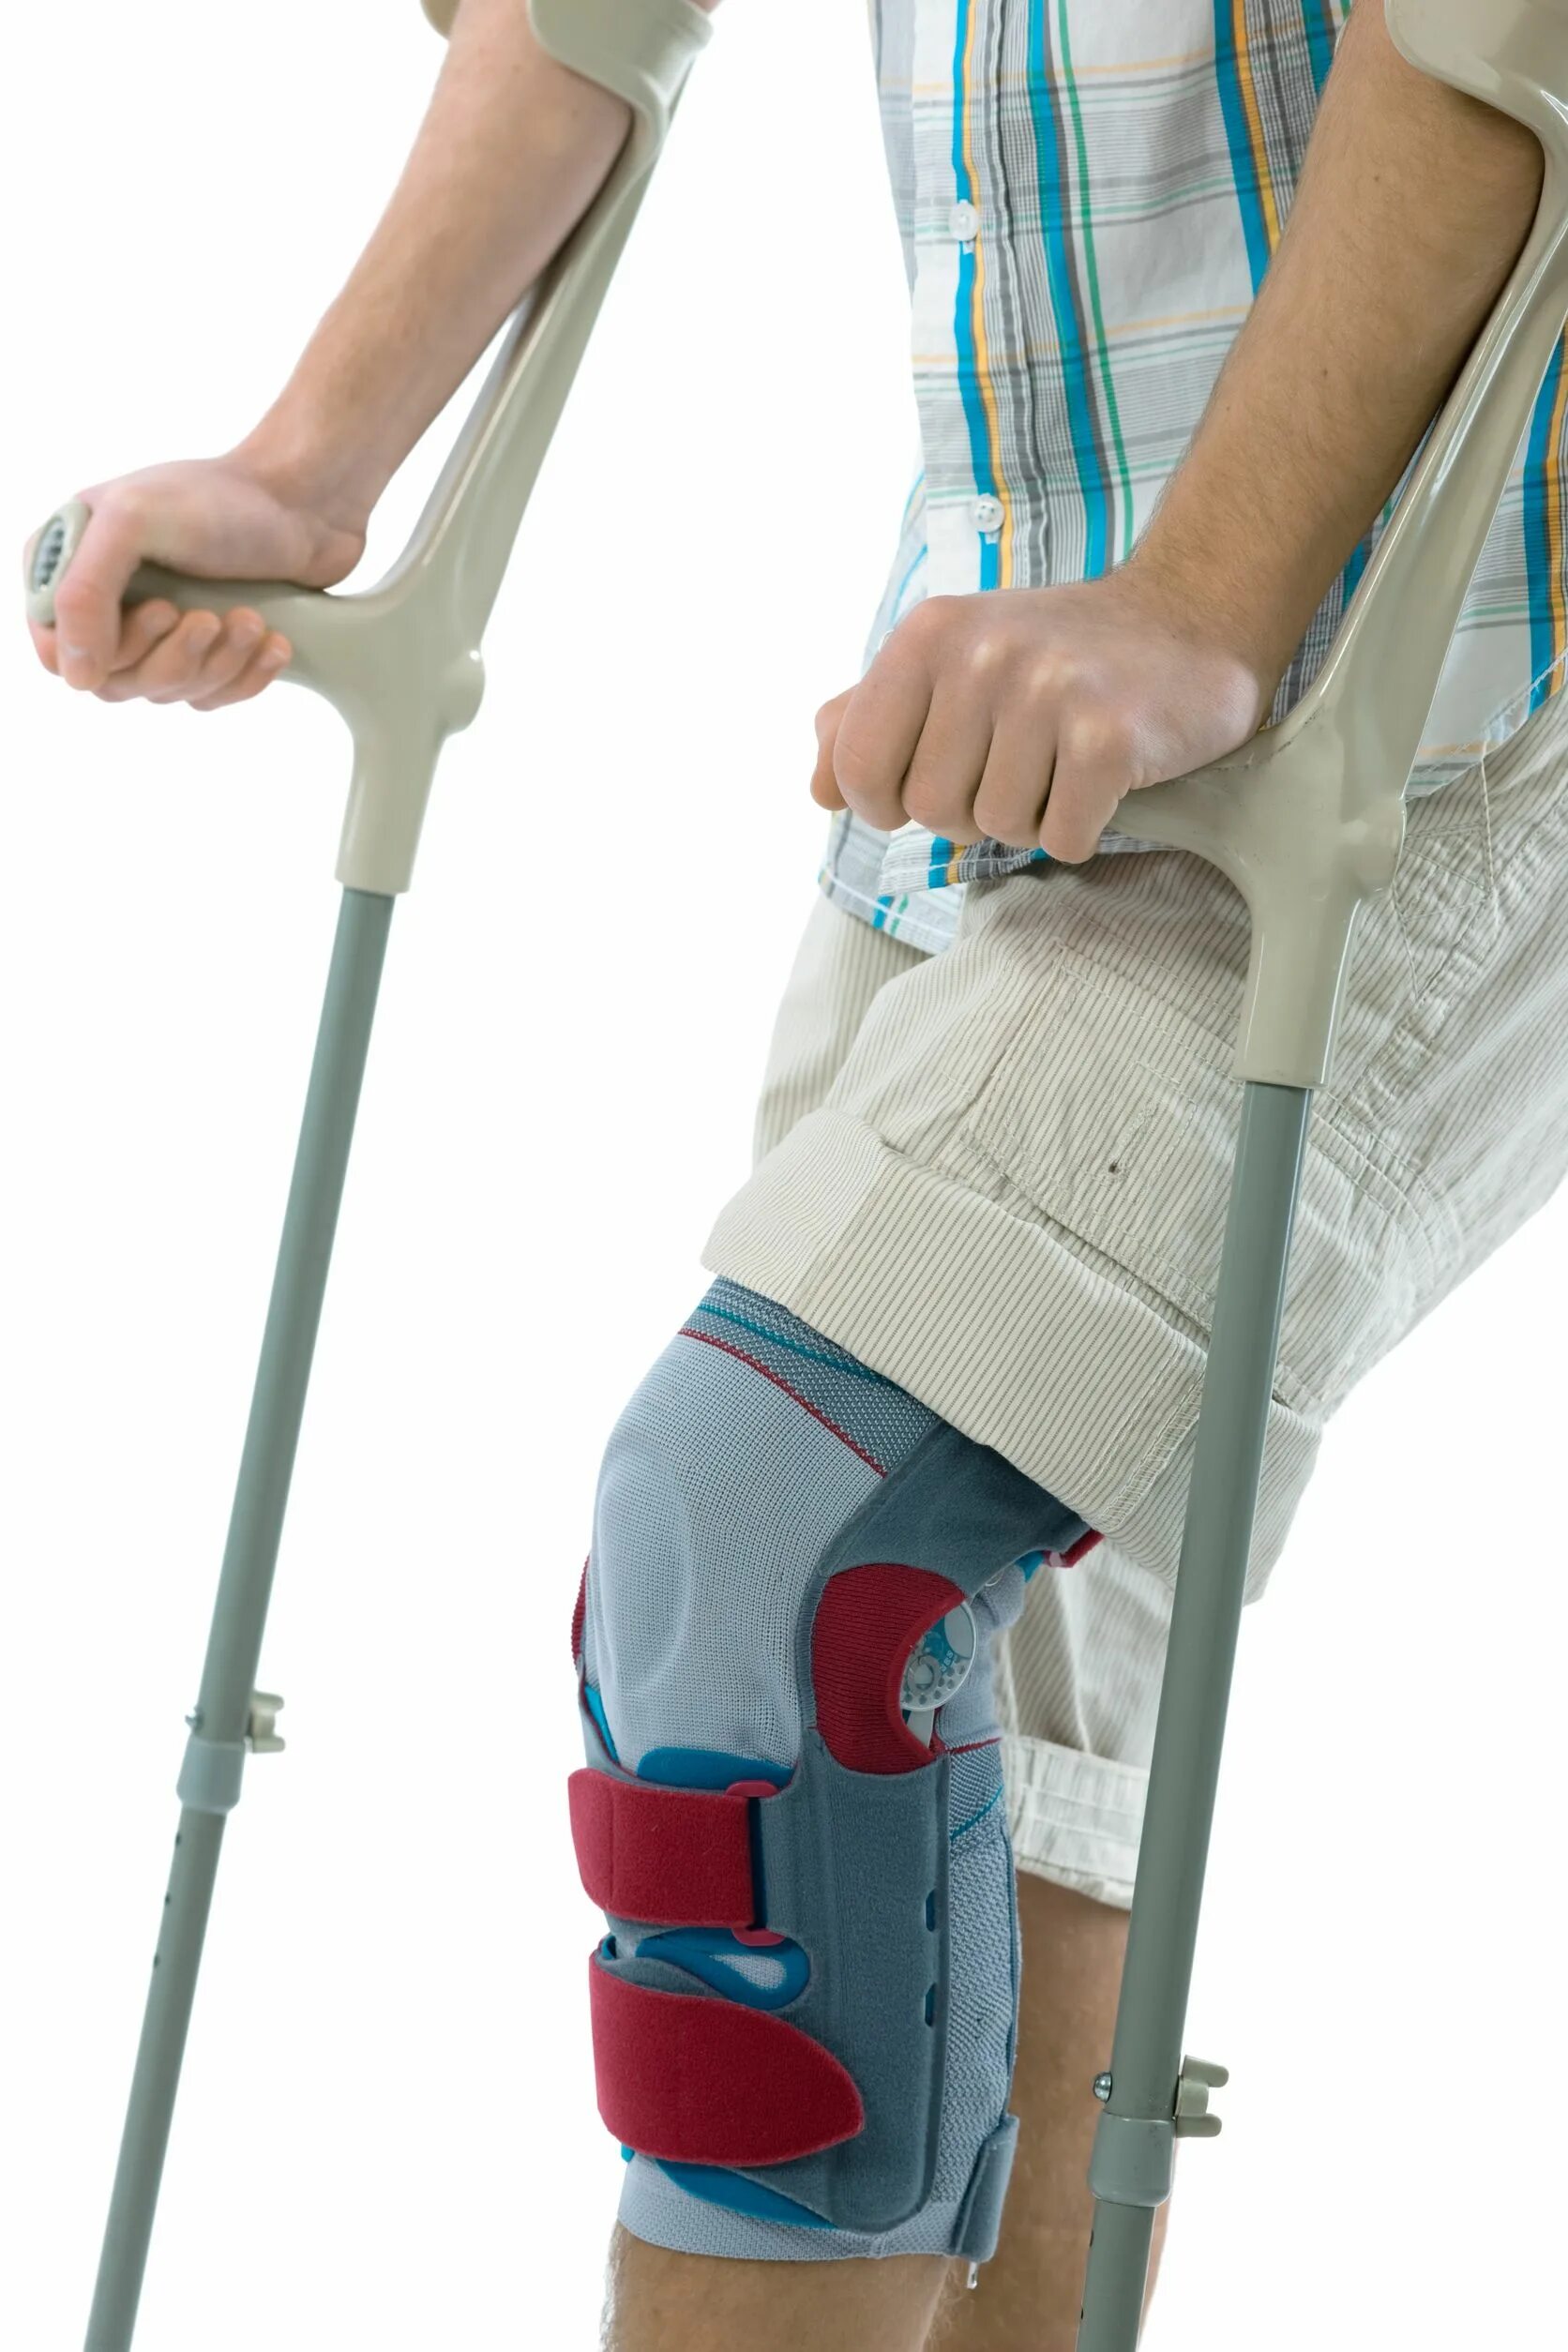 Сколько нужно ходить на костылях после эндопротезирования. Костыли после операции на коленном суставе. Костыли при переломе ноги. Костыли после артроскопии. Удобные костыли при переломе ноги.